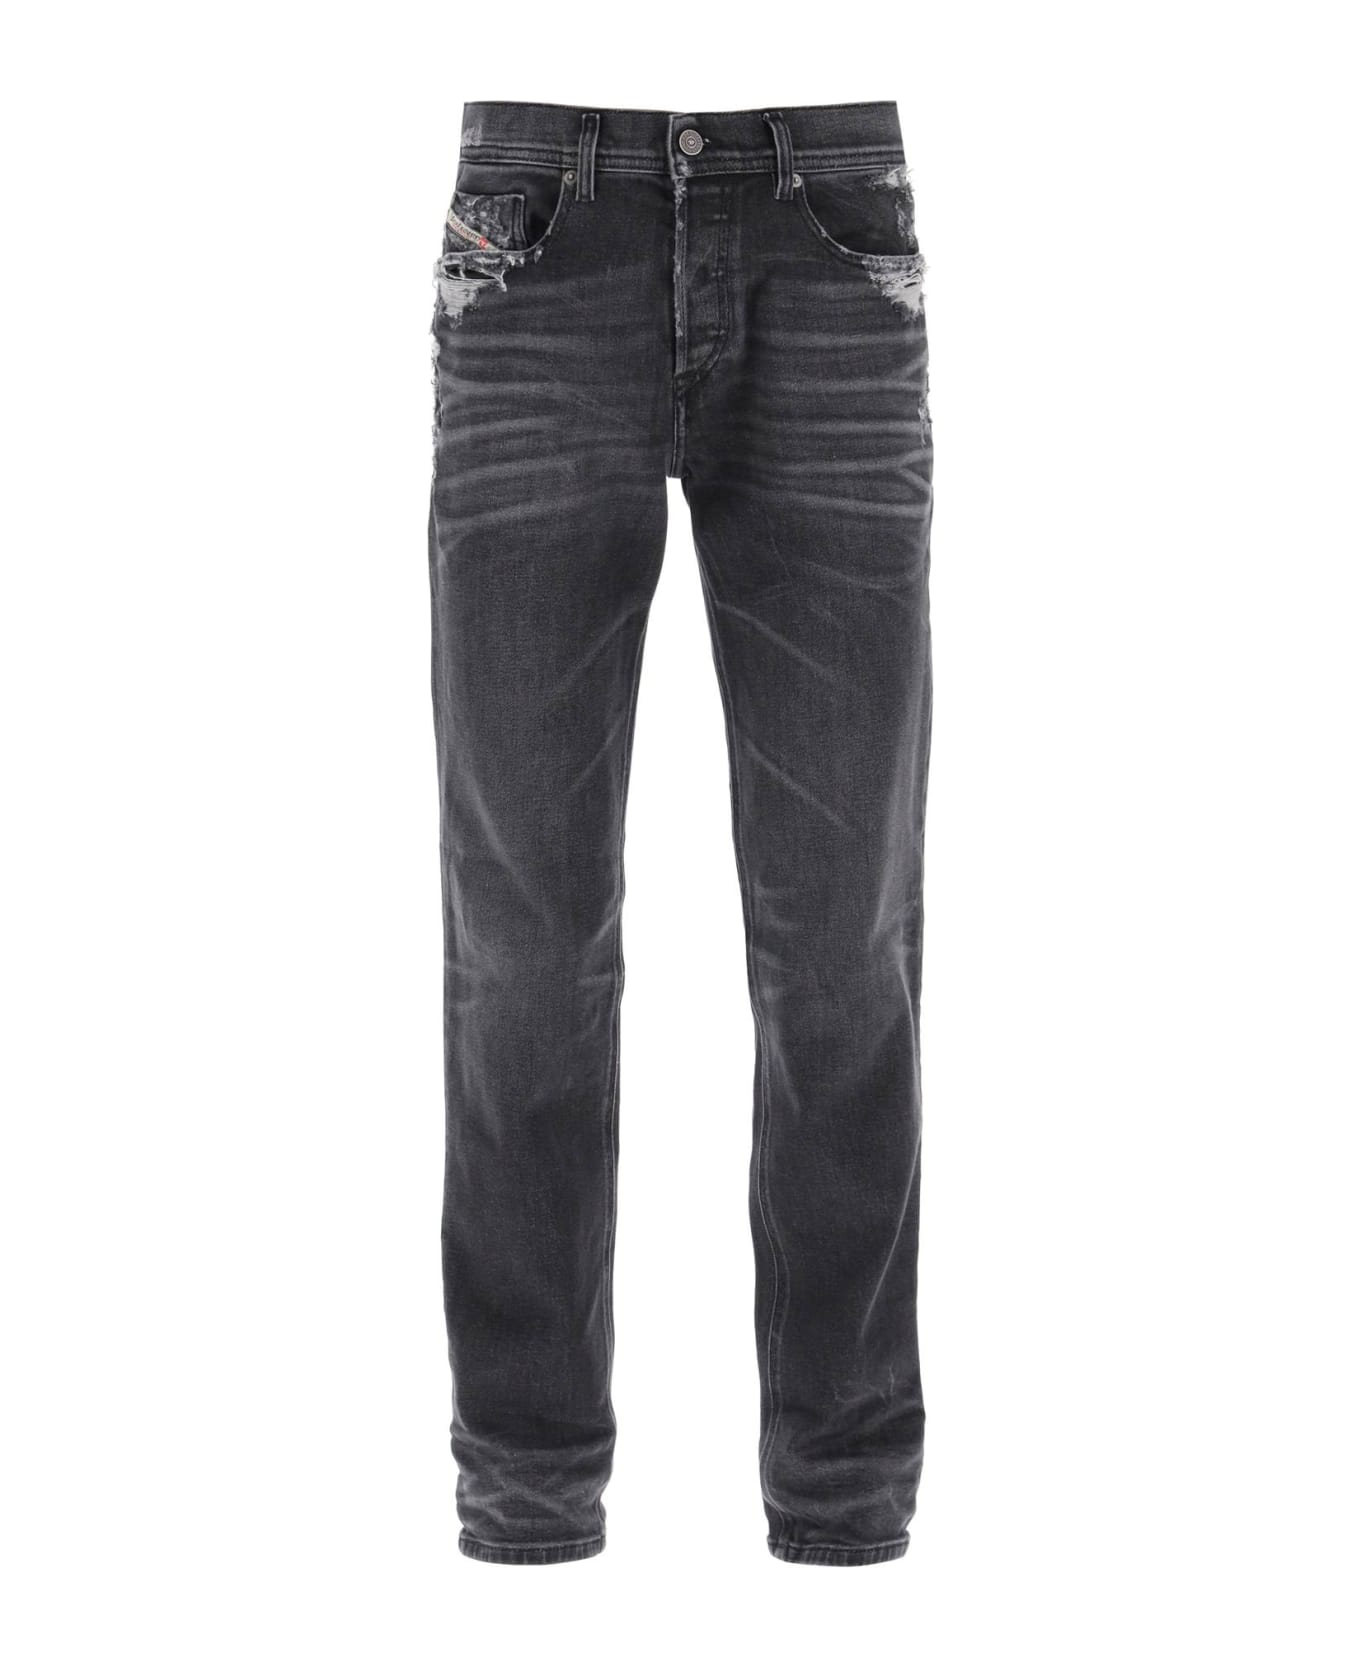 Diesel 023 D-finitive Regular Fit Jeans - BLACK DENIM (Grey)